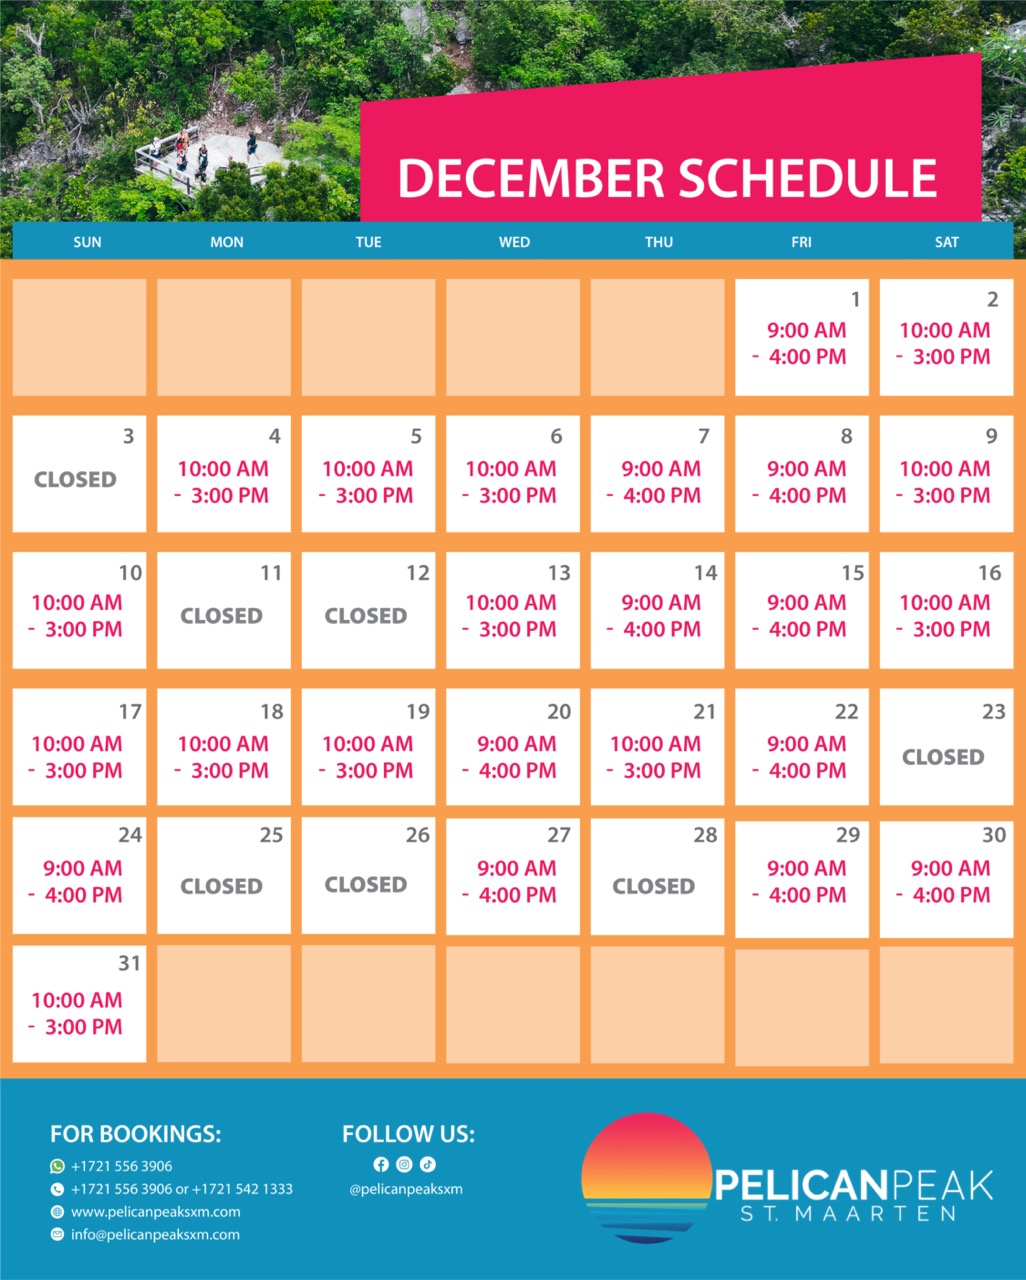 Pelican peak december schedule